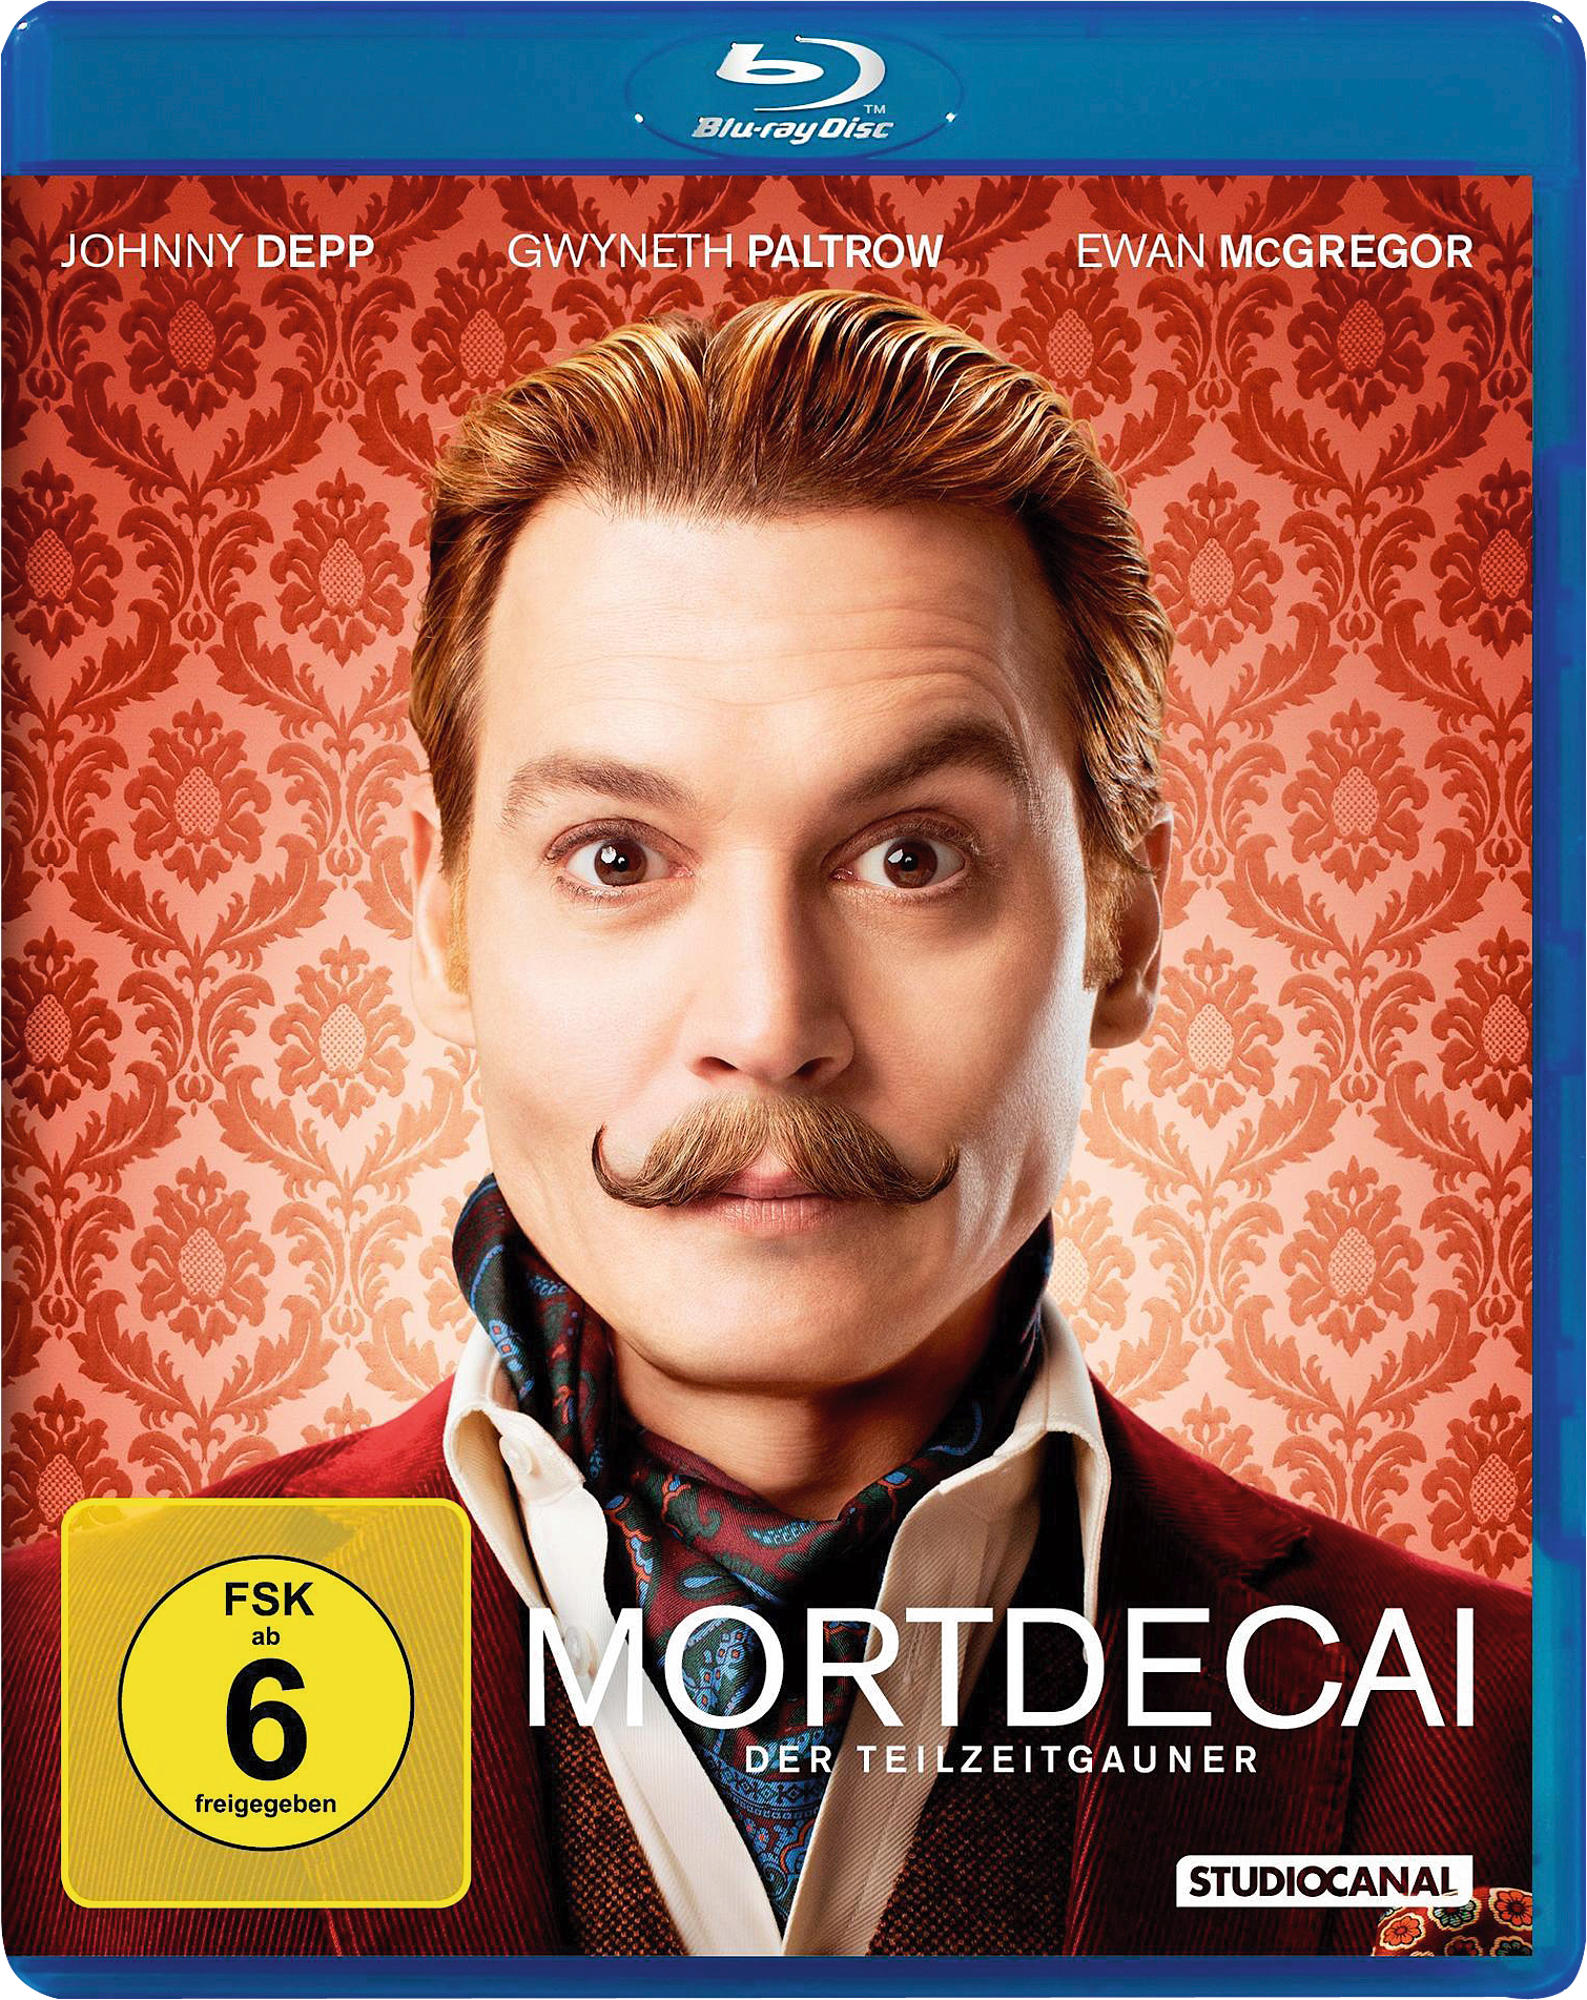 Mortdecai - Der Blu-ray Teilzeitgauner